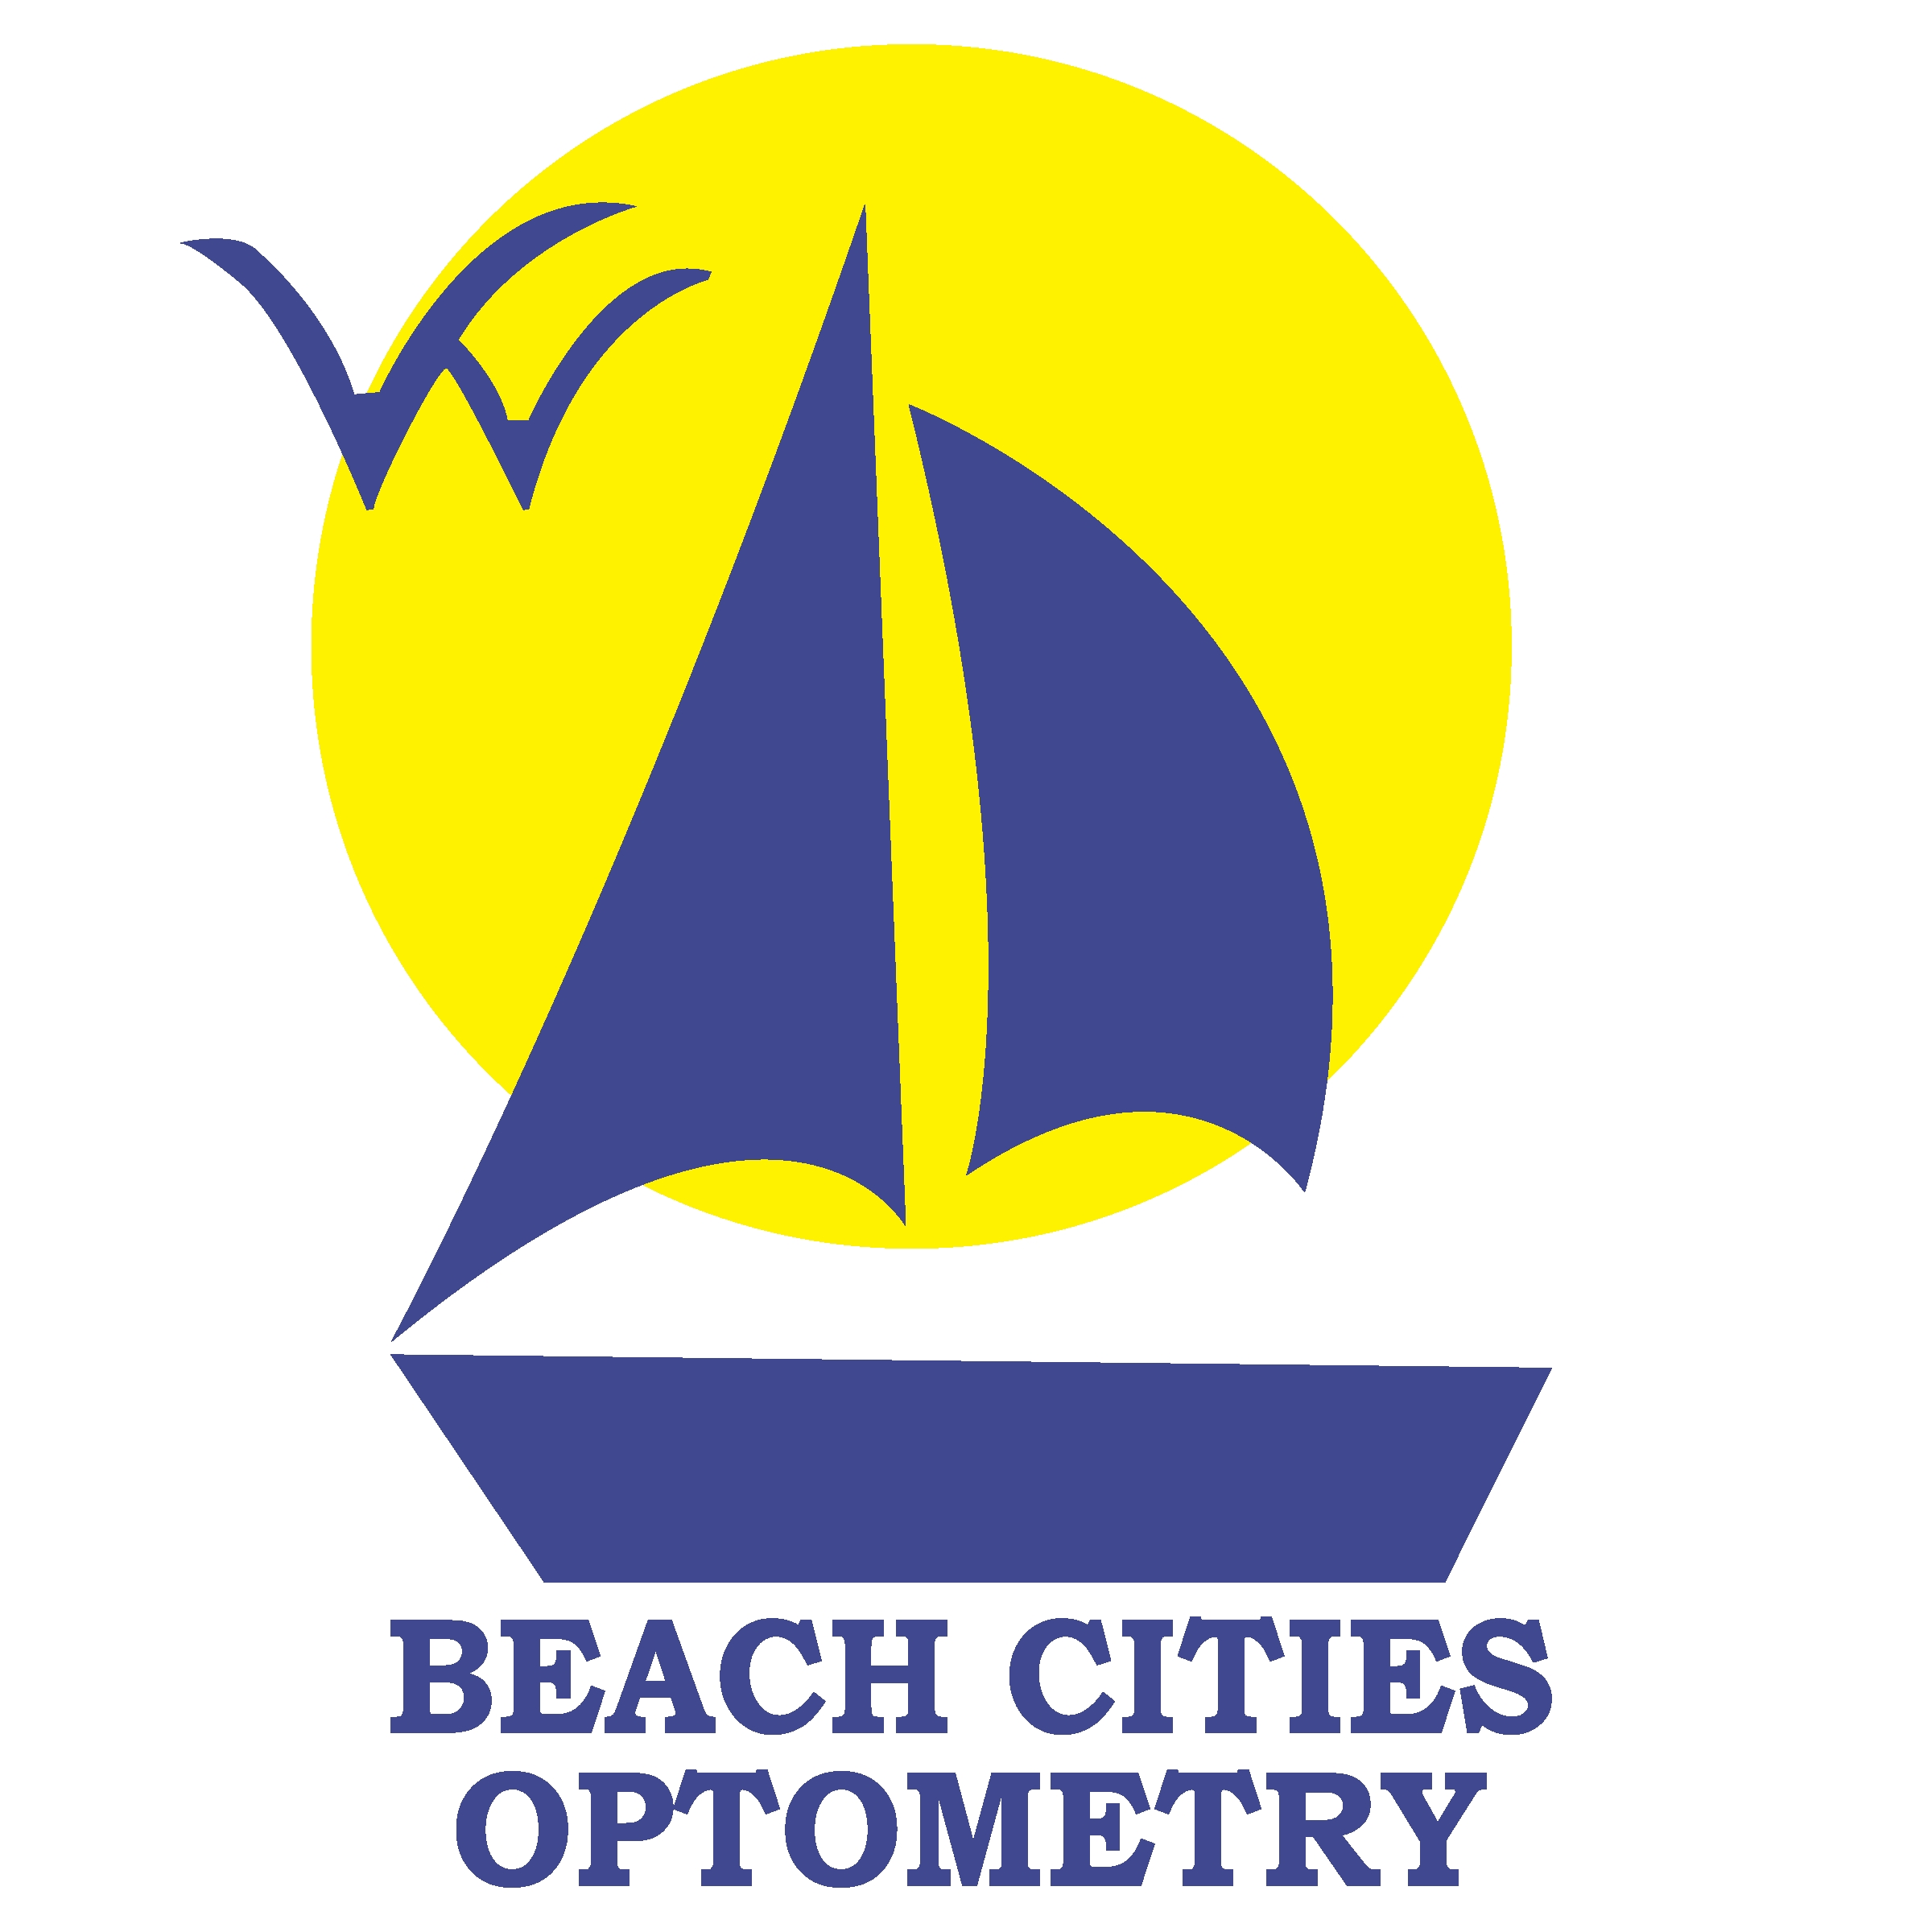 Beach Cities optomery logo